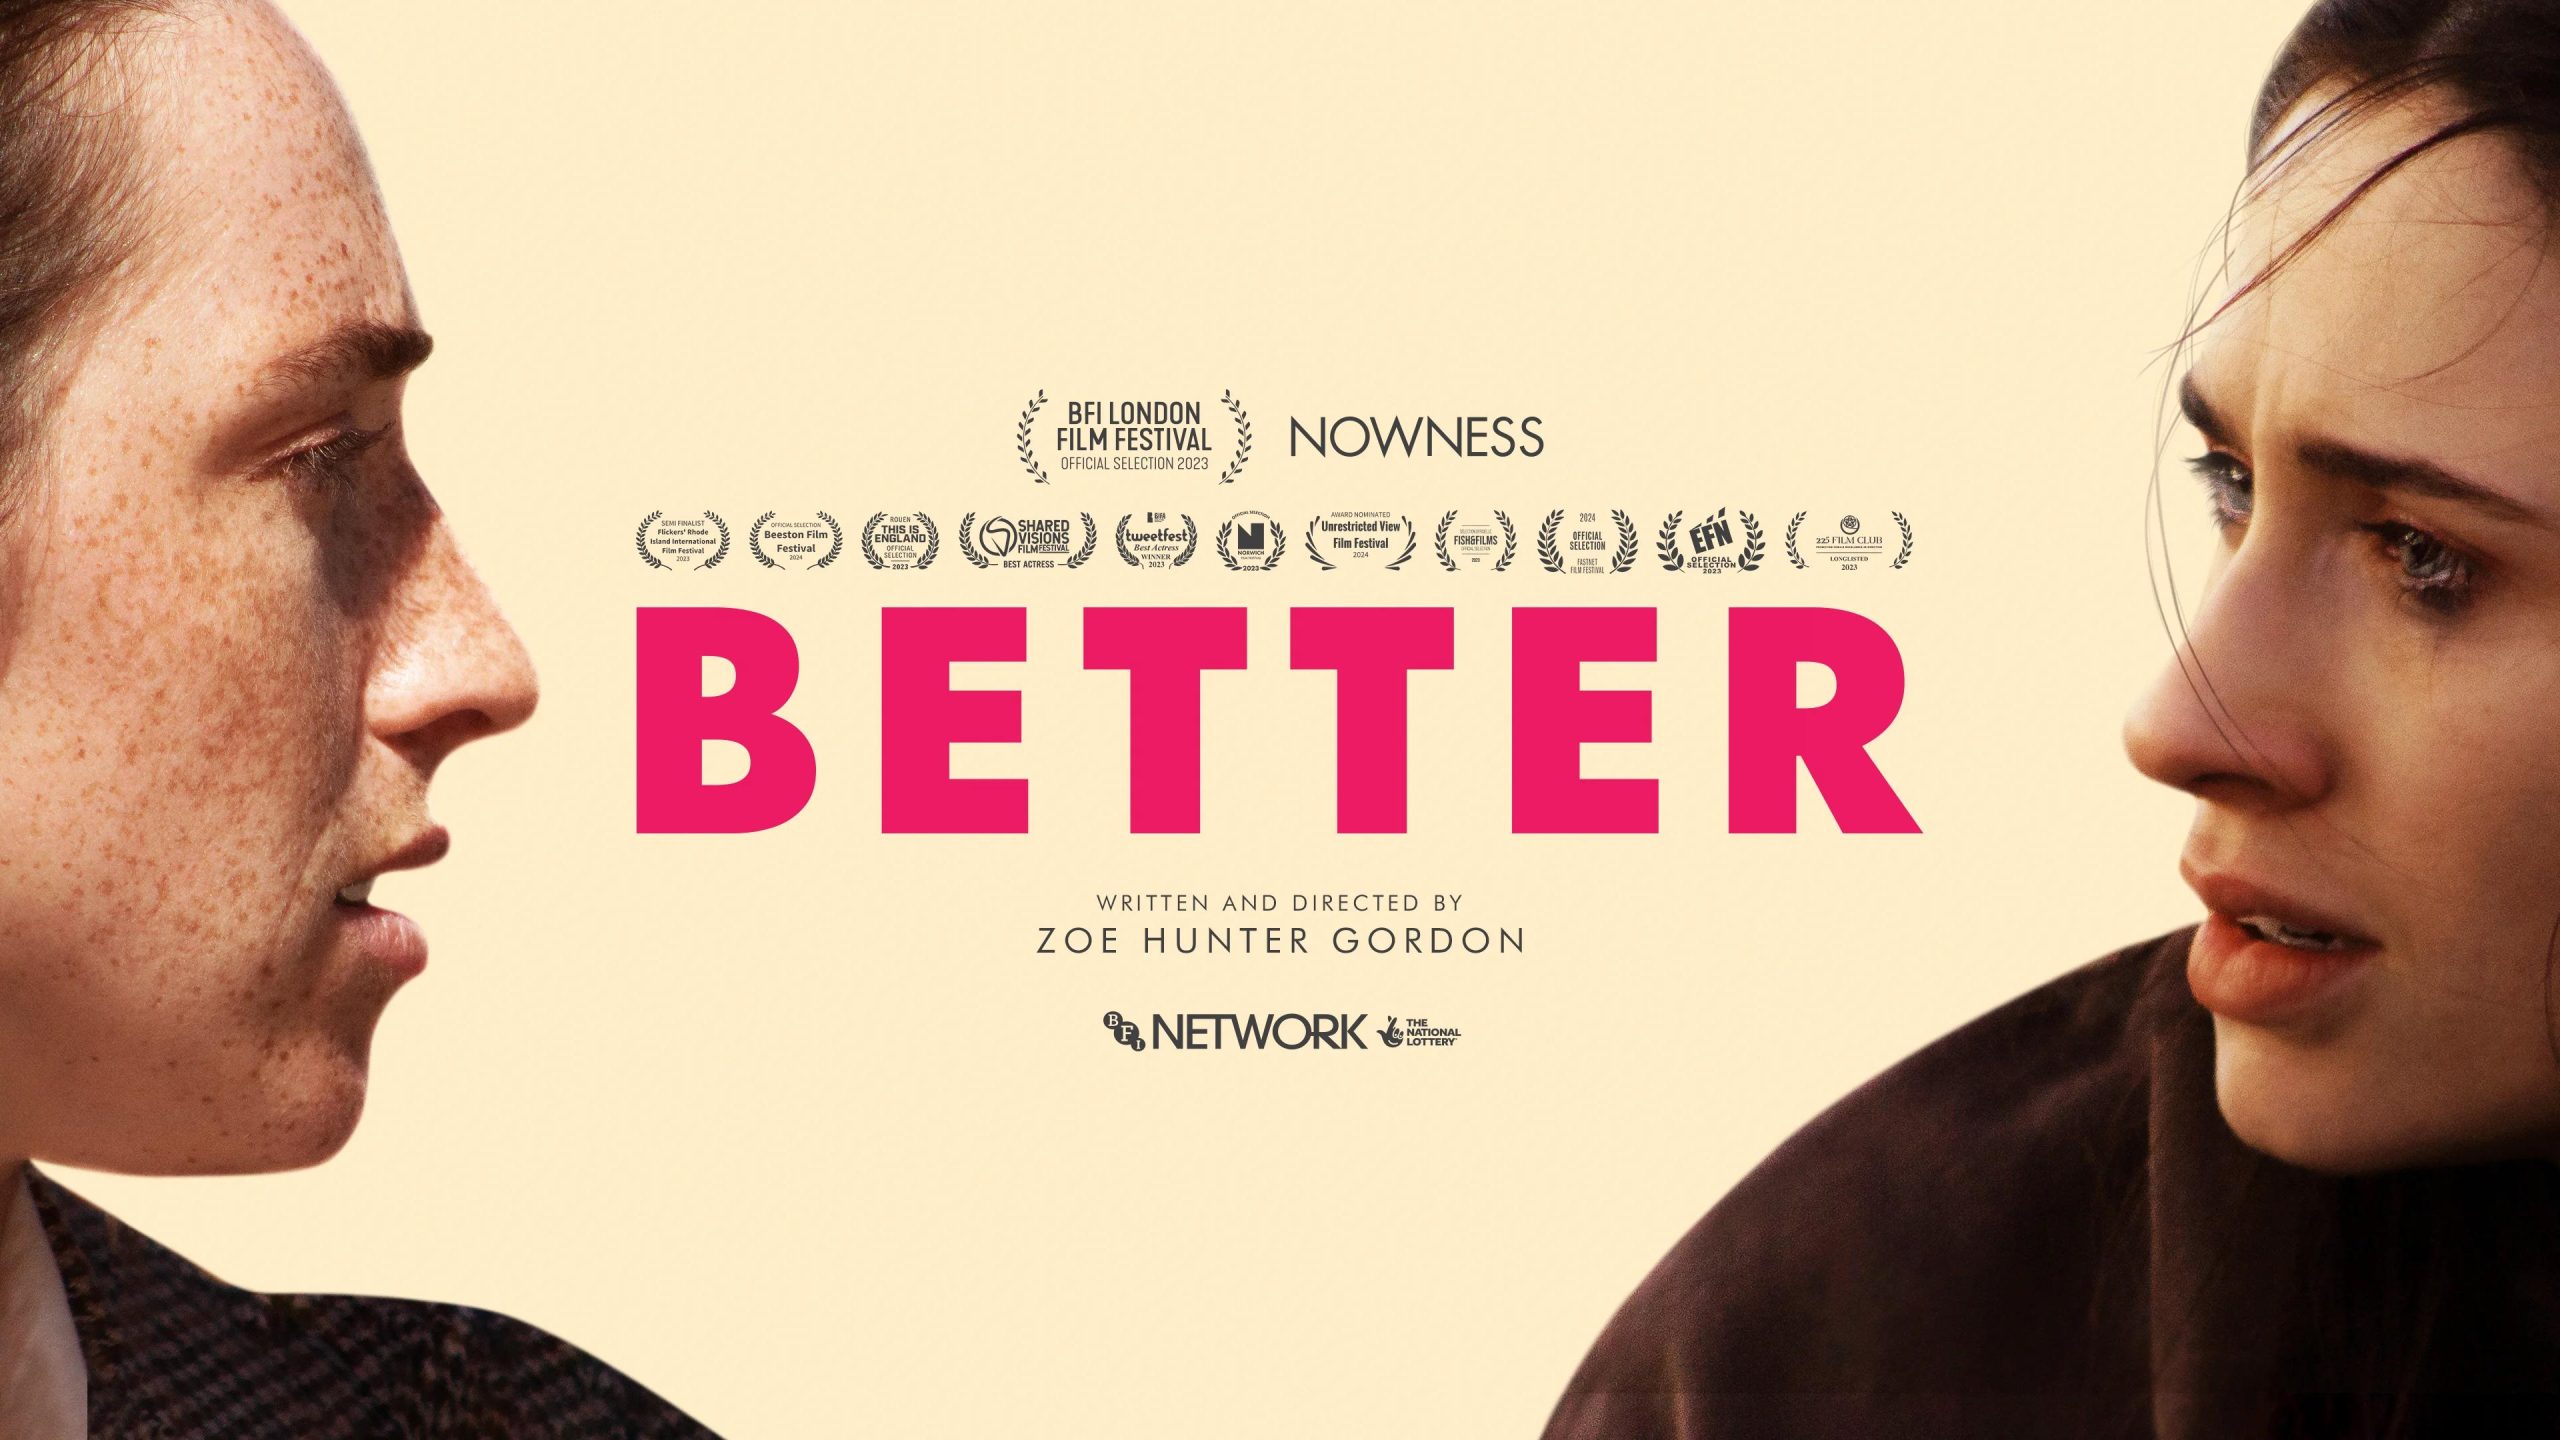 Better on Vimeo [Video]